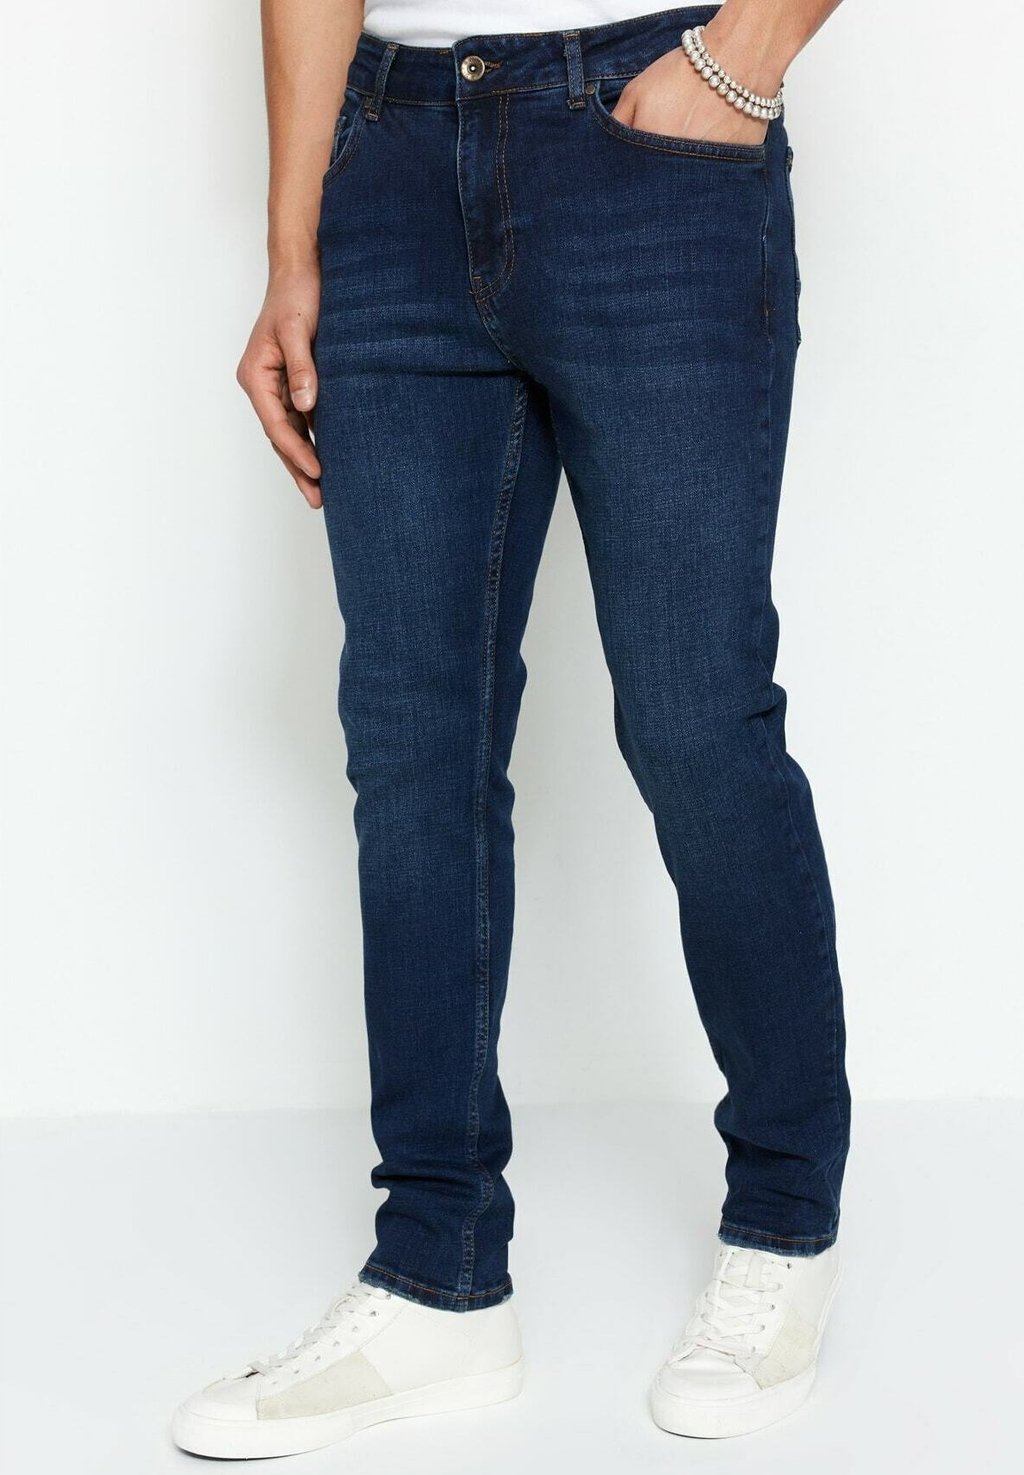 Джинсы узкого кроя Trendyol, темно-синие. темно синие жесткие джинсы узкого кроя new look